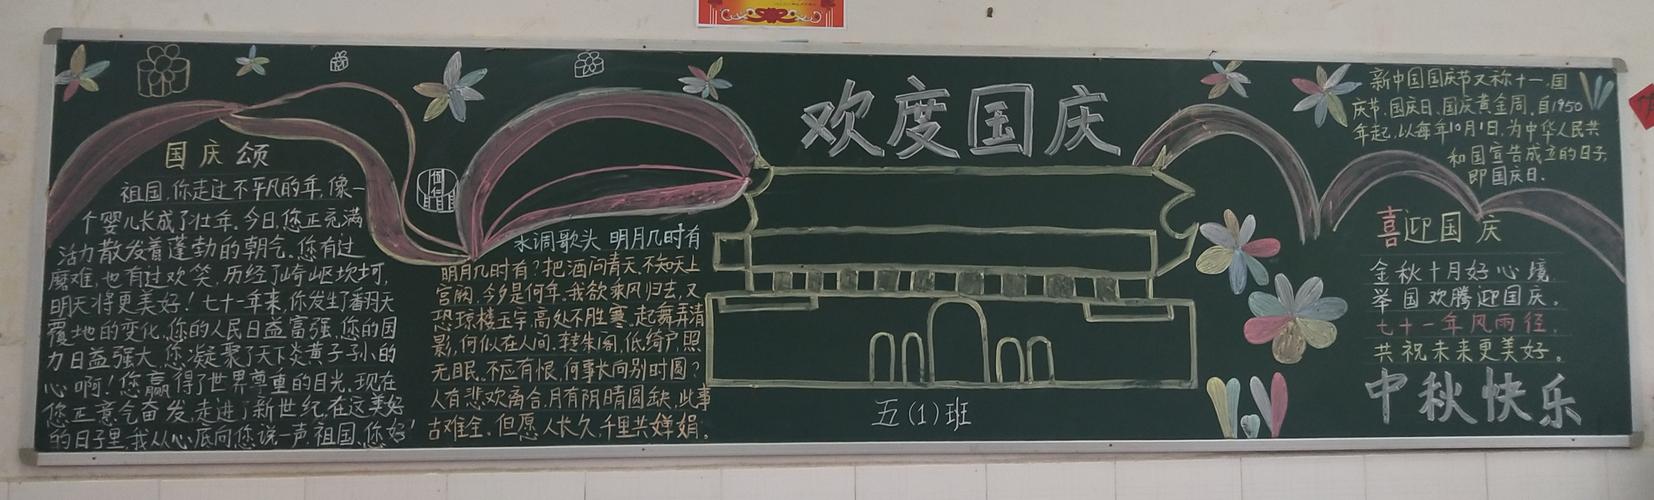 小小黑板报浓浓爱国情关峡苗族乡学校黑板报评选活动开始了